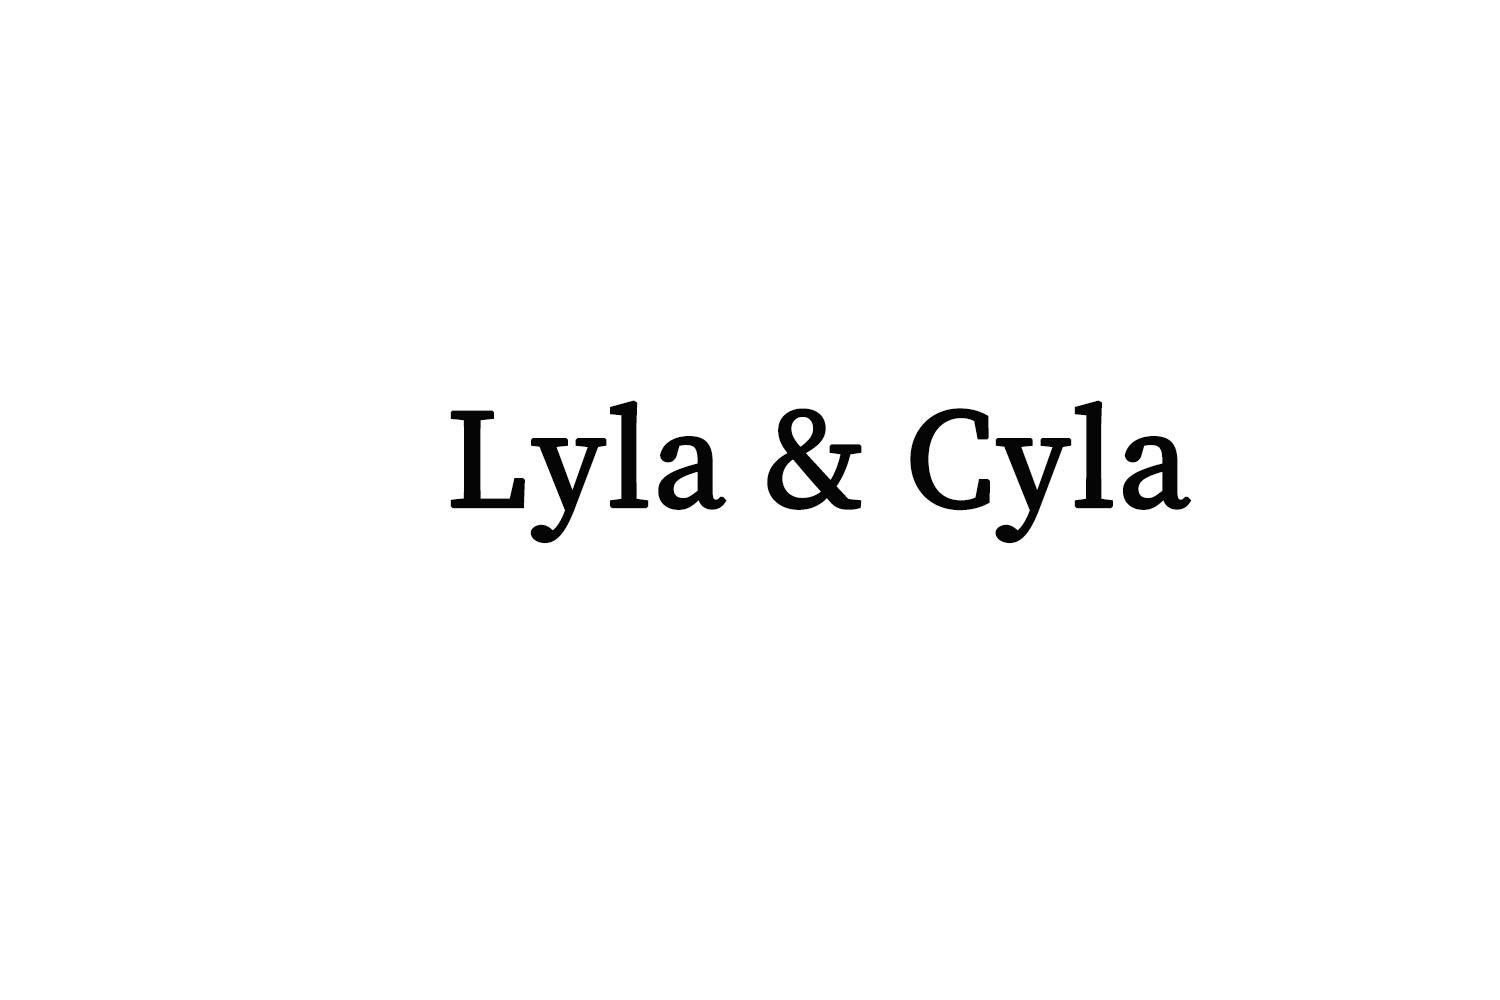 LYLA & CYLA